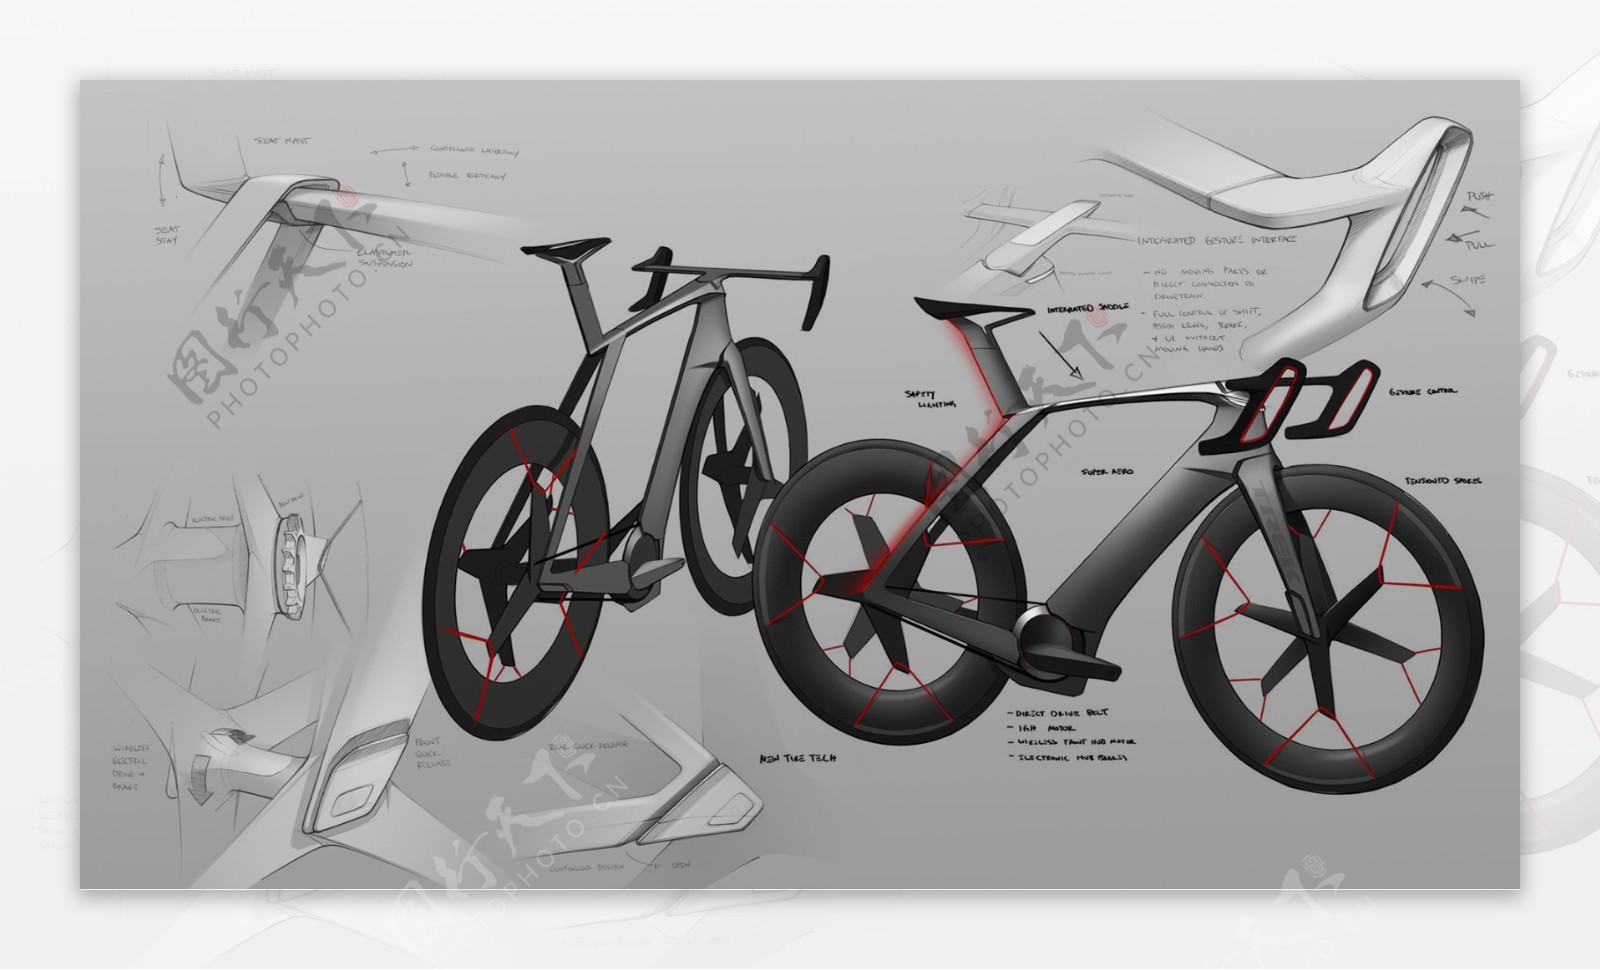 2026自行车概念设计